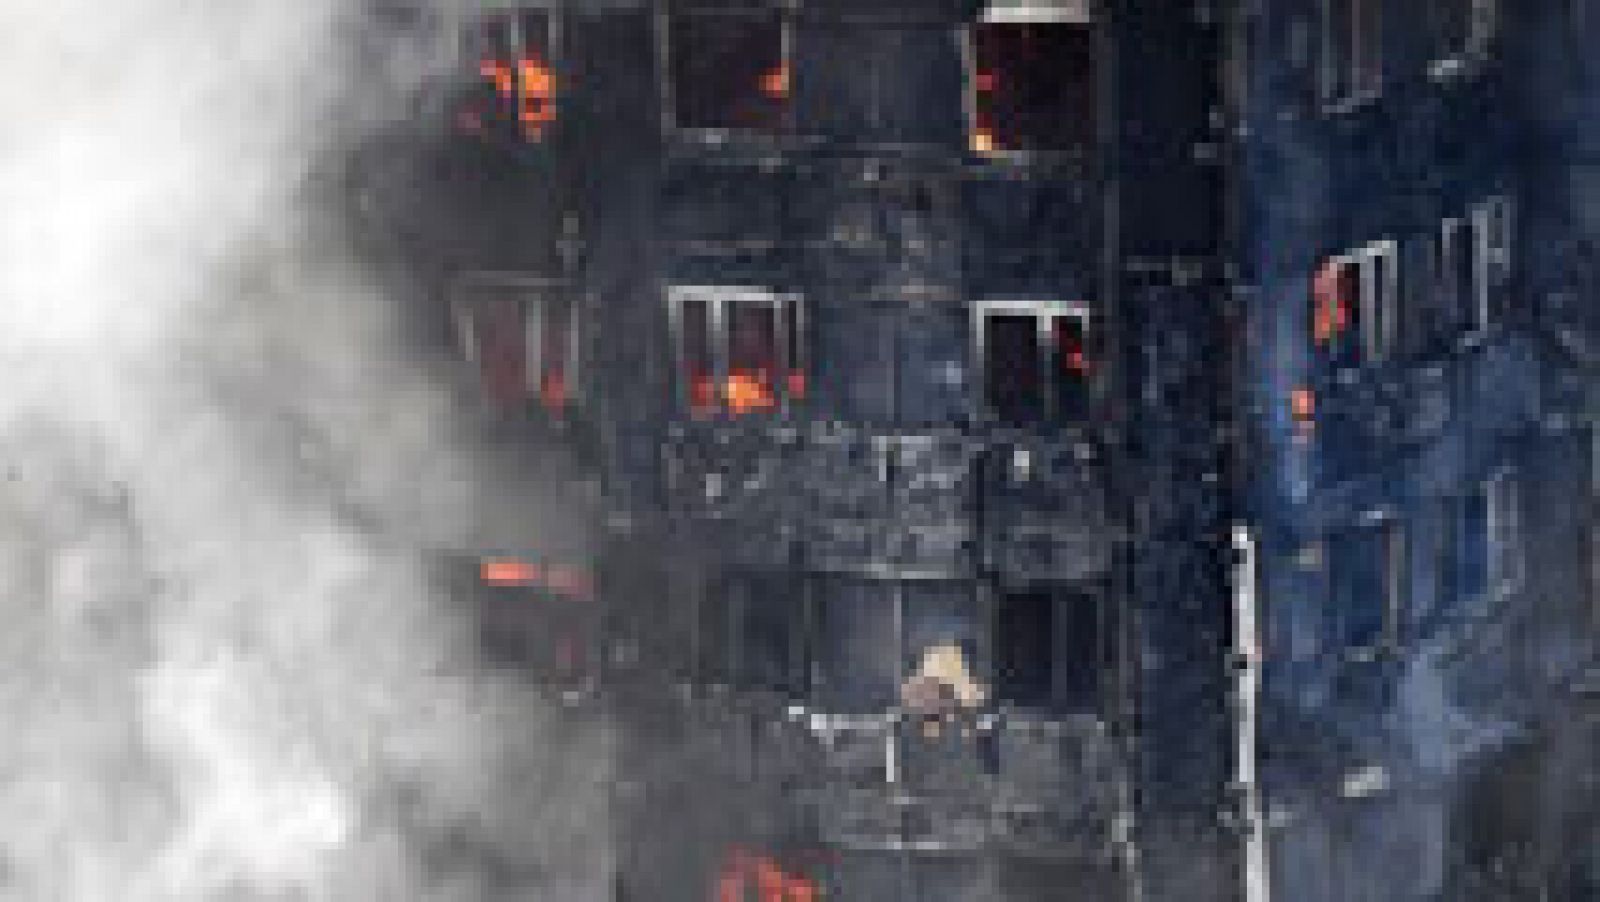 El incendio de un edificio en Londres deja al menos 6 fallecidos y 74 heridos, veinte de ellos en estado crítico